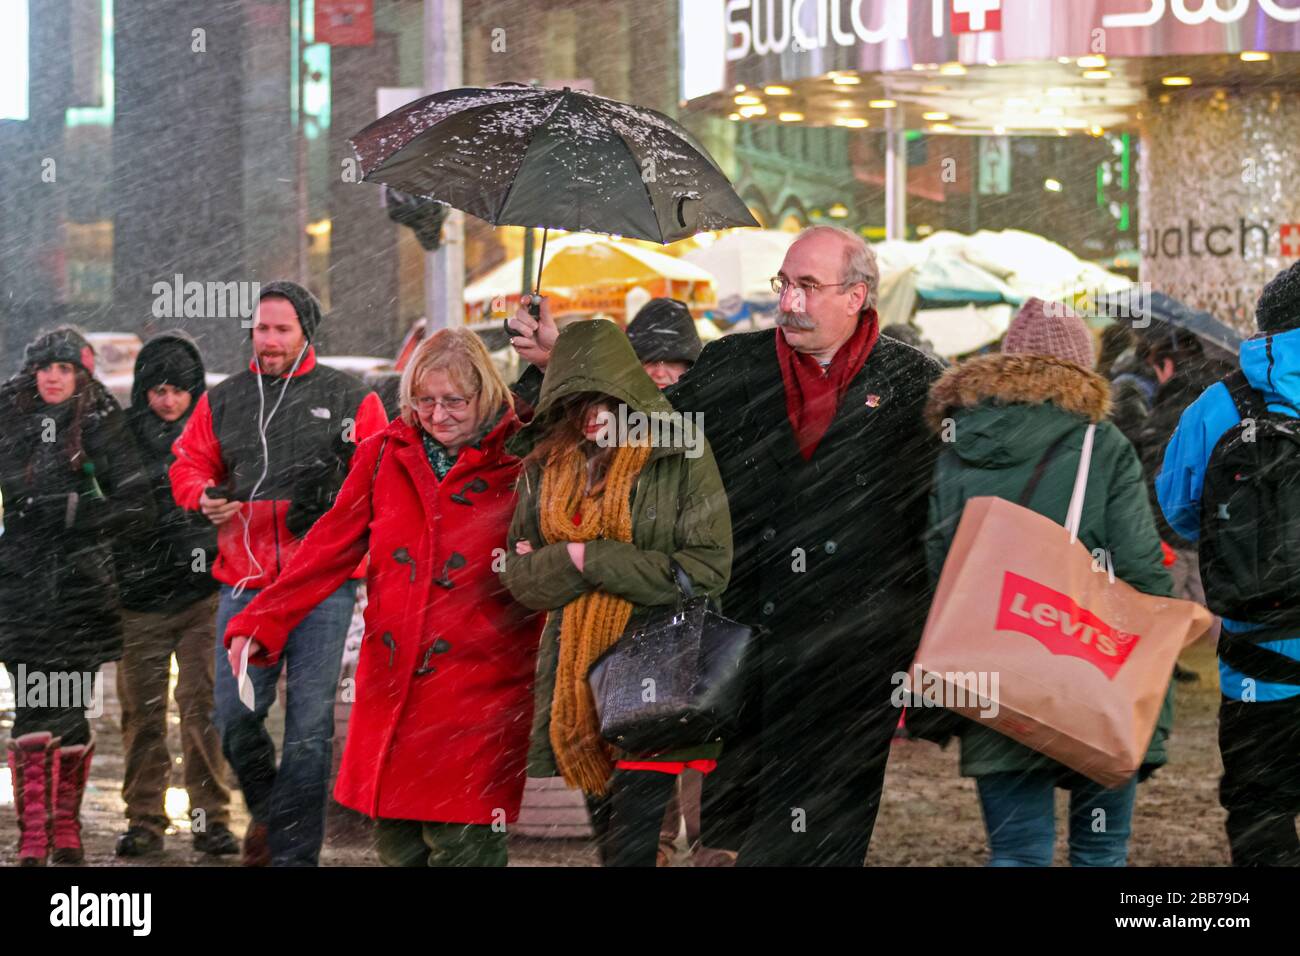 Älterer Herr, der seine Frau und seine Tochter während eines schneesturms auf dem Time Square, Manhattan, New York City, Vereinigte Staaten mit Regenschirm bedeckt Stockfoto